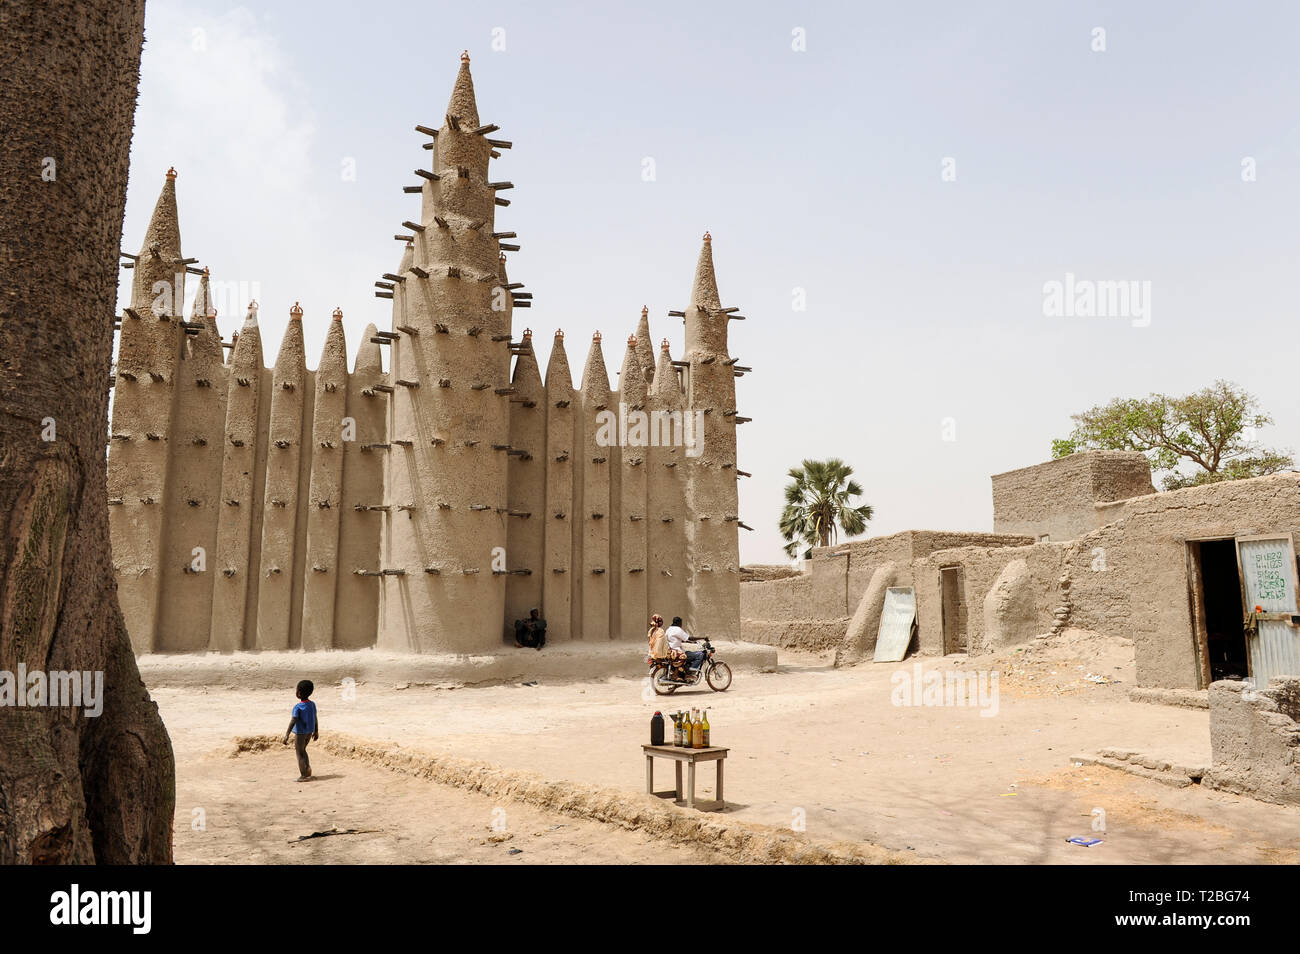 MALI, Mopti, Moschee aus Lehm gebaut, brennstoffflasche für Verkauf Stockfoto